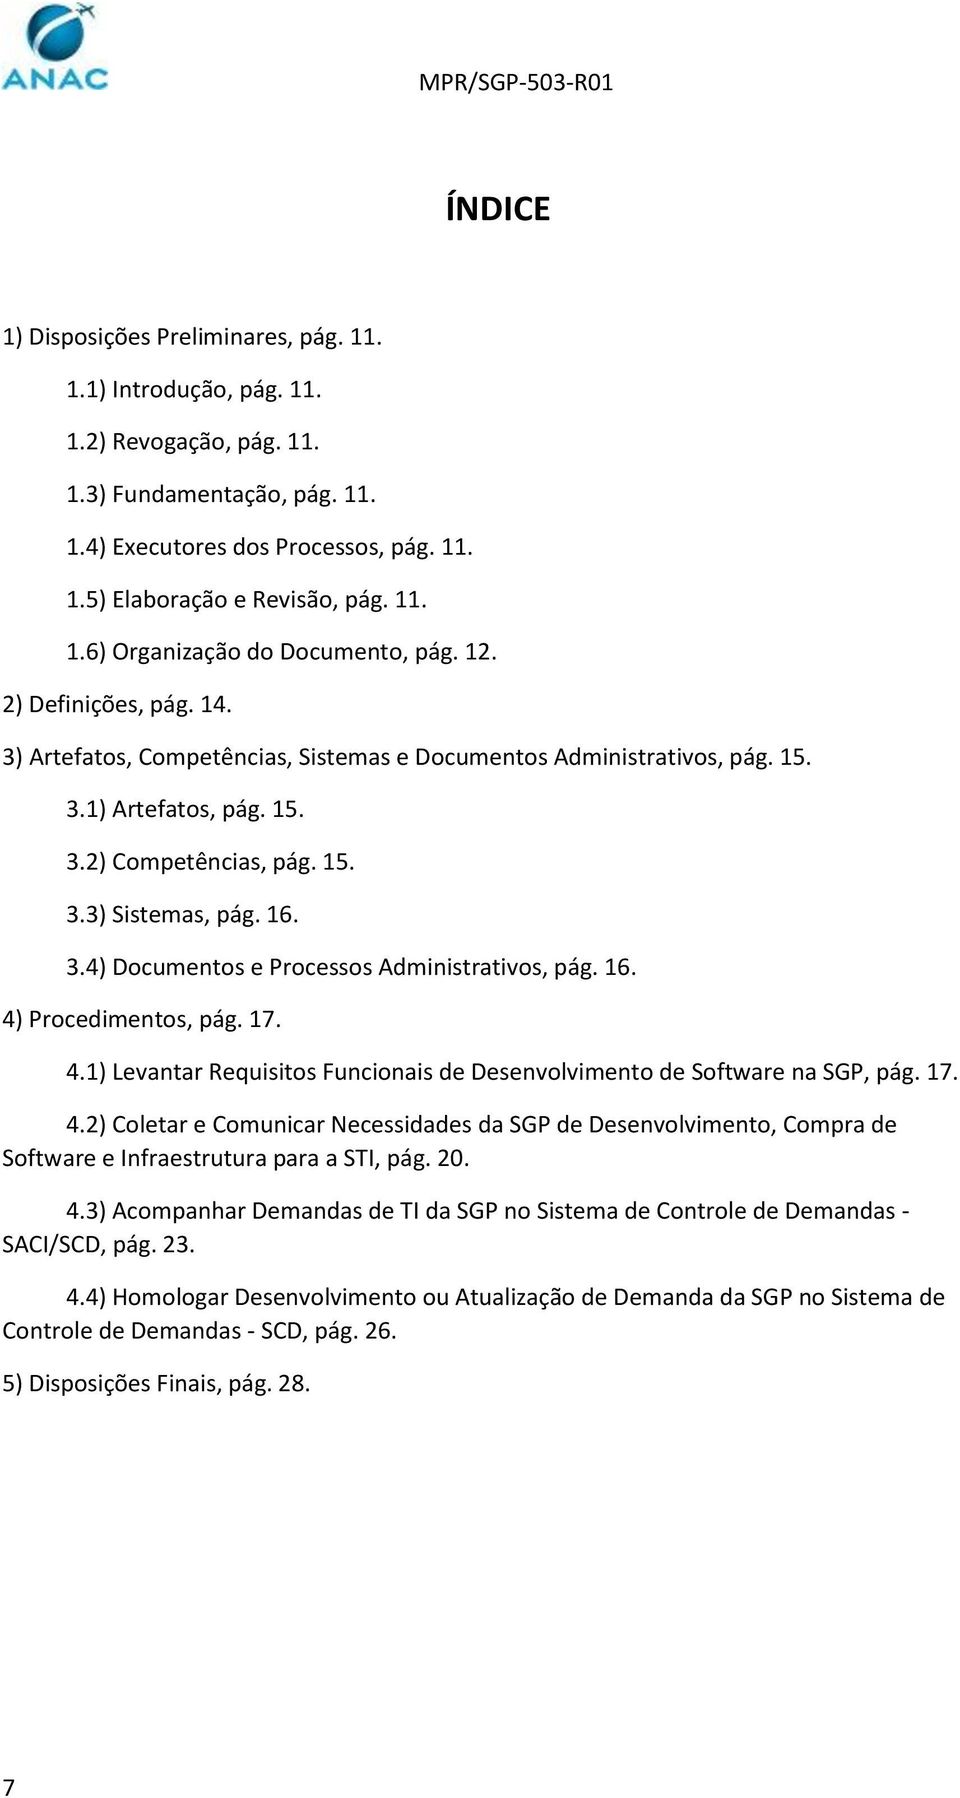 16. 4) Procedimentos, pág. 17. 4.1) Levantar Requisitos Funcionais de Desenvolvimento de Software na SGP, pág. 17. 4.2) Coletar e Comunicar Necessidades da SGP de Desenvolvimento, Compra de Software e Infraestrutura para a STI, pág.